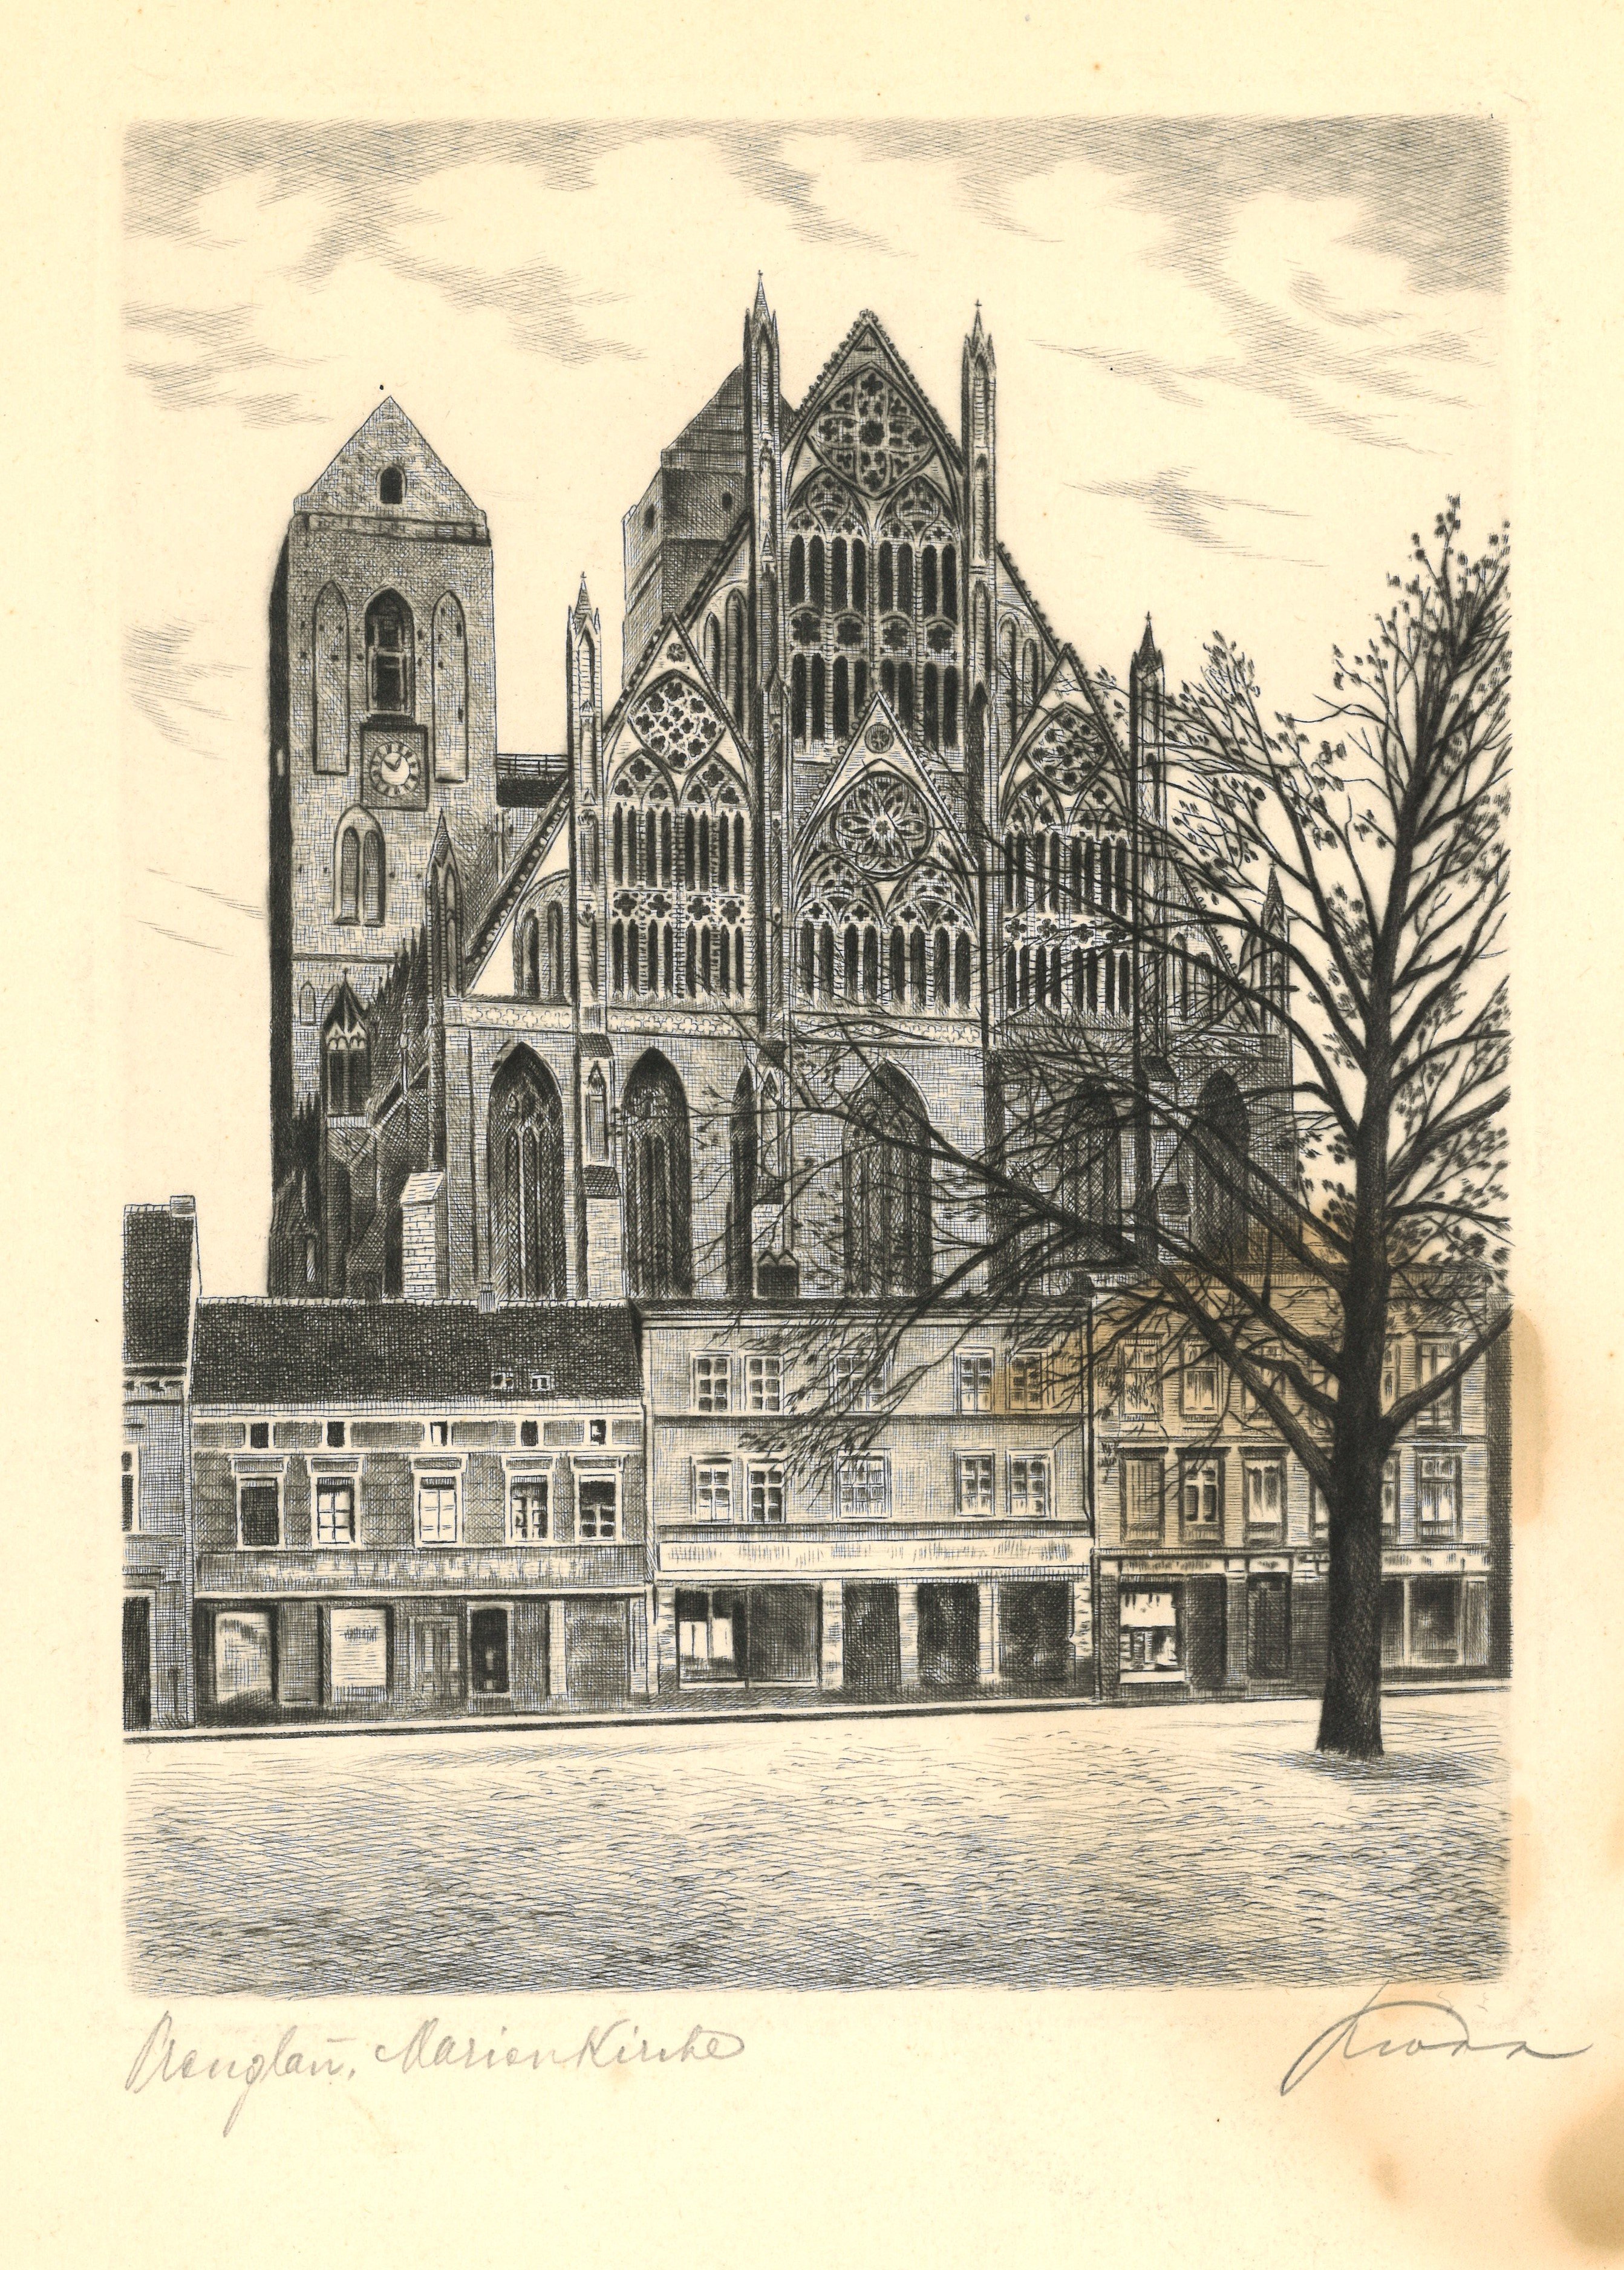 Prenzlau: Marienkirche von Osten (Landesgeschichtliche Vereinigung für die Mark Brandenburg e.V., Archiv CC BY)